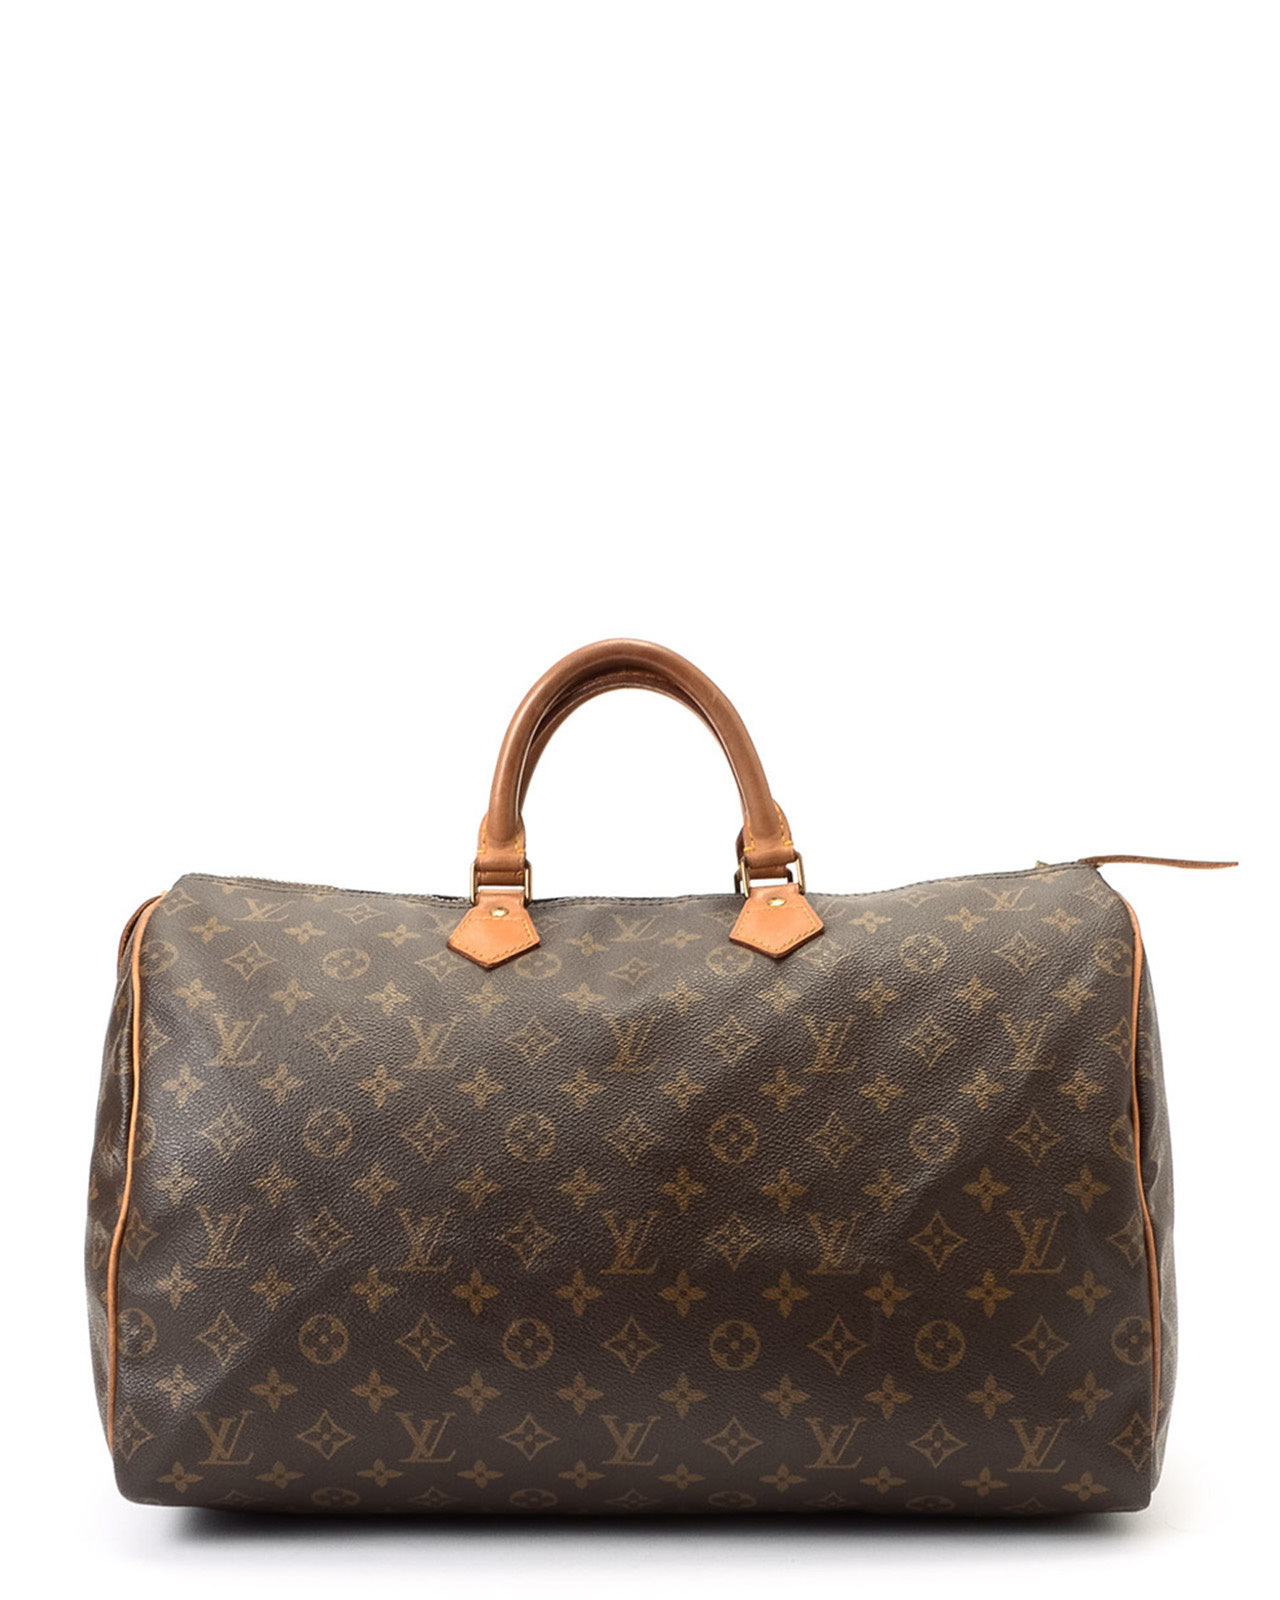 Louis vuitton Monogram Speedy 40 Handbag in Brown | Lyst